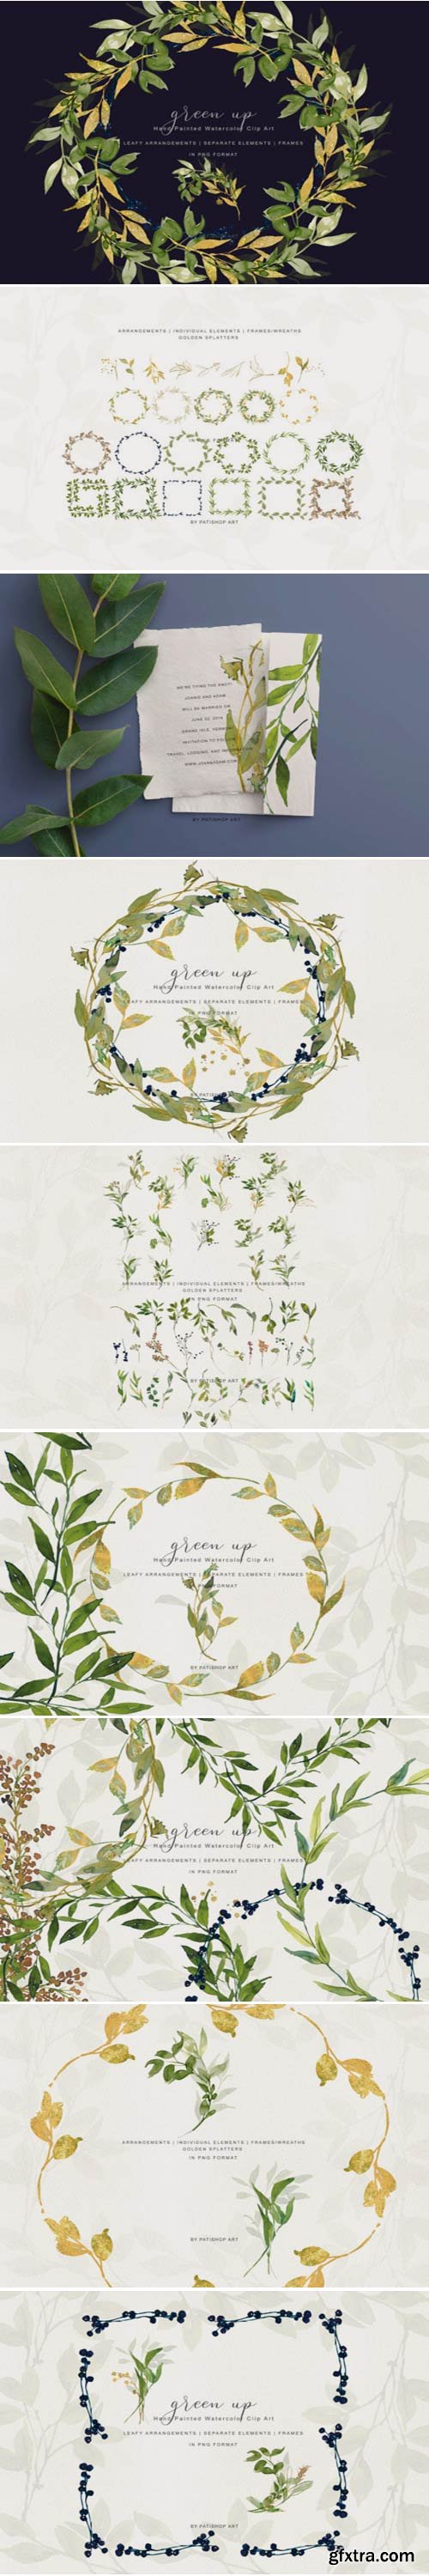 Watercolor Leafy Arrangements & Frames 1446877